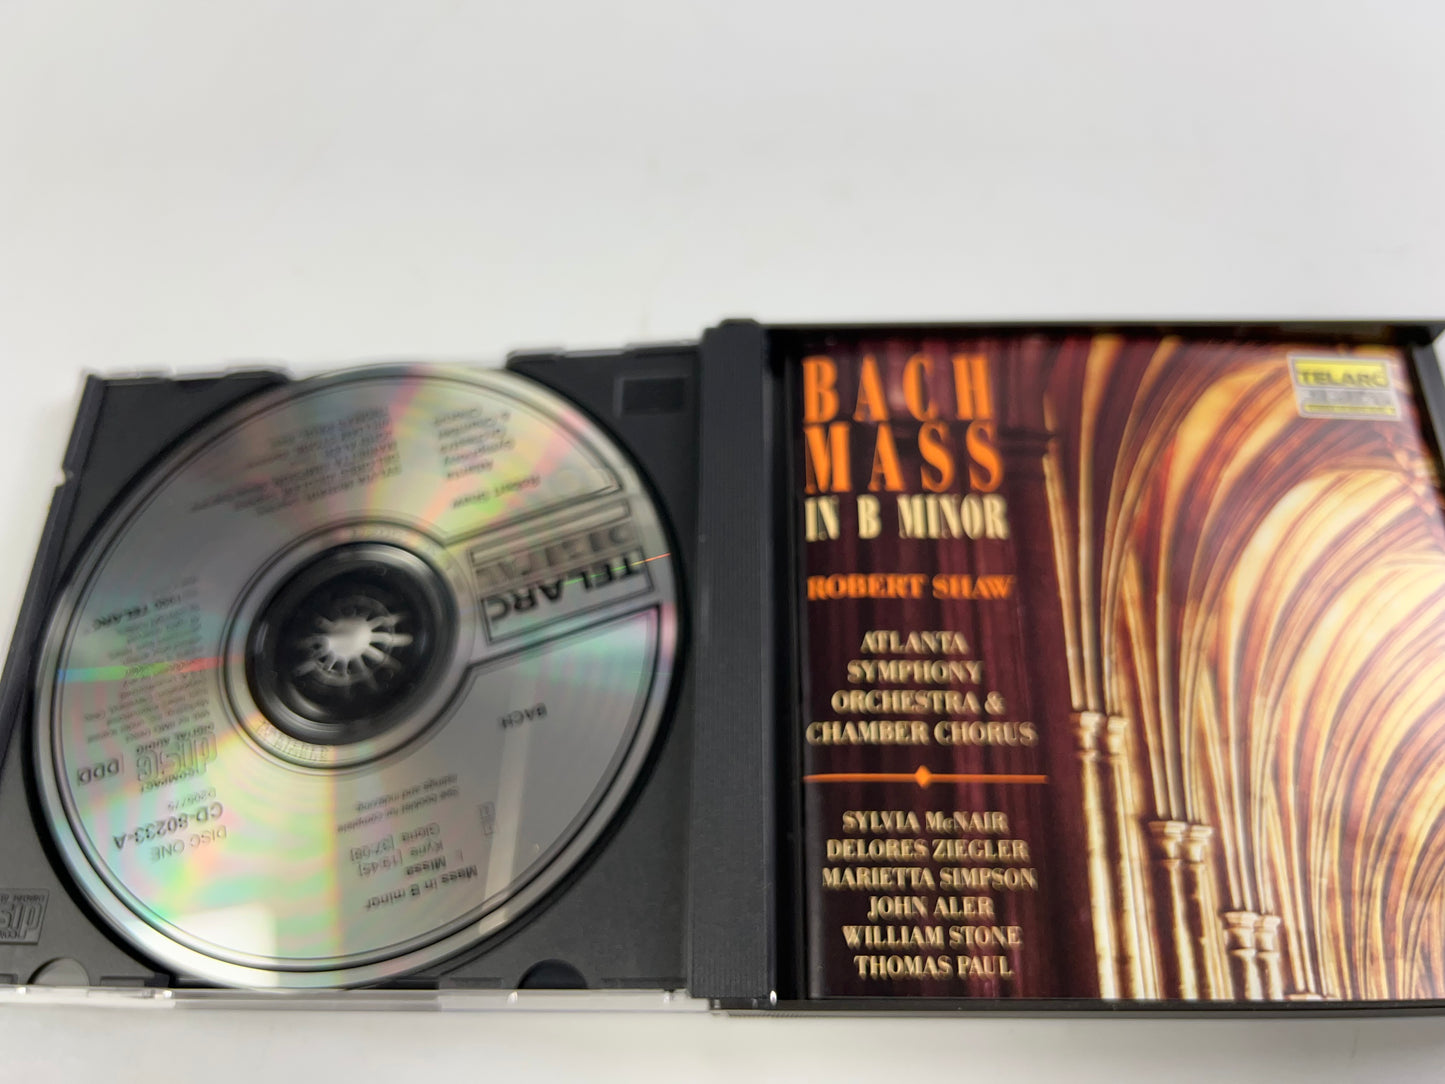 Bach: Mass in B minor - Audio CD By Johann Sebastian Bach